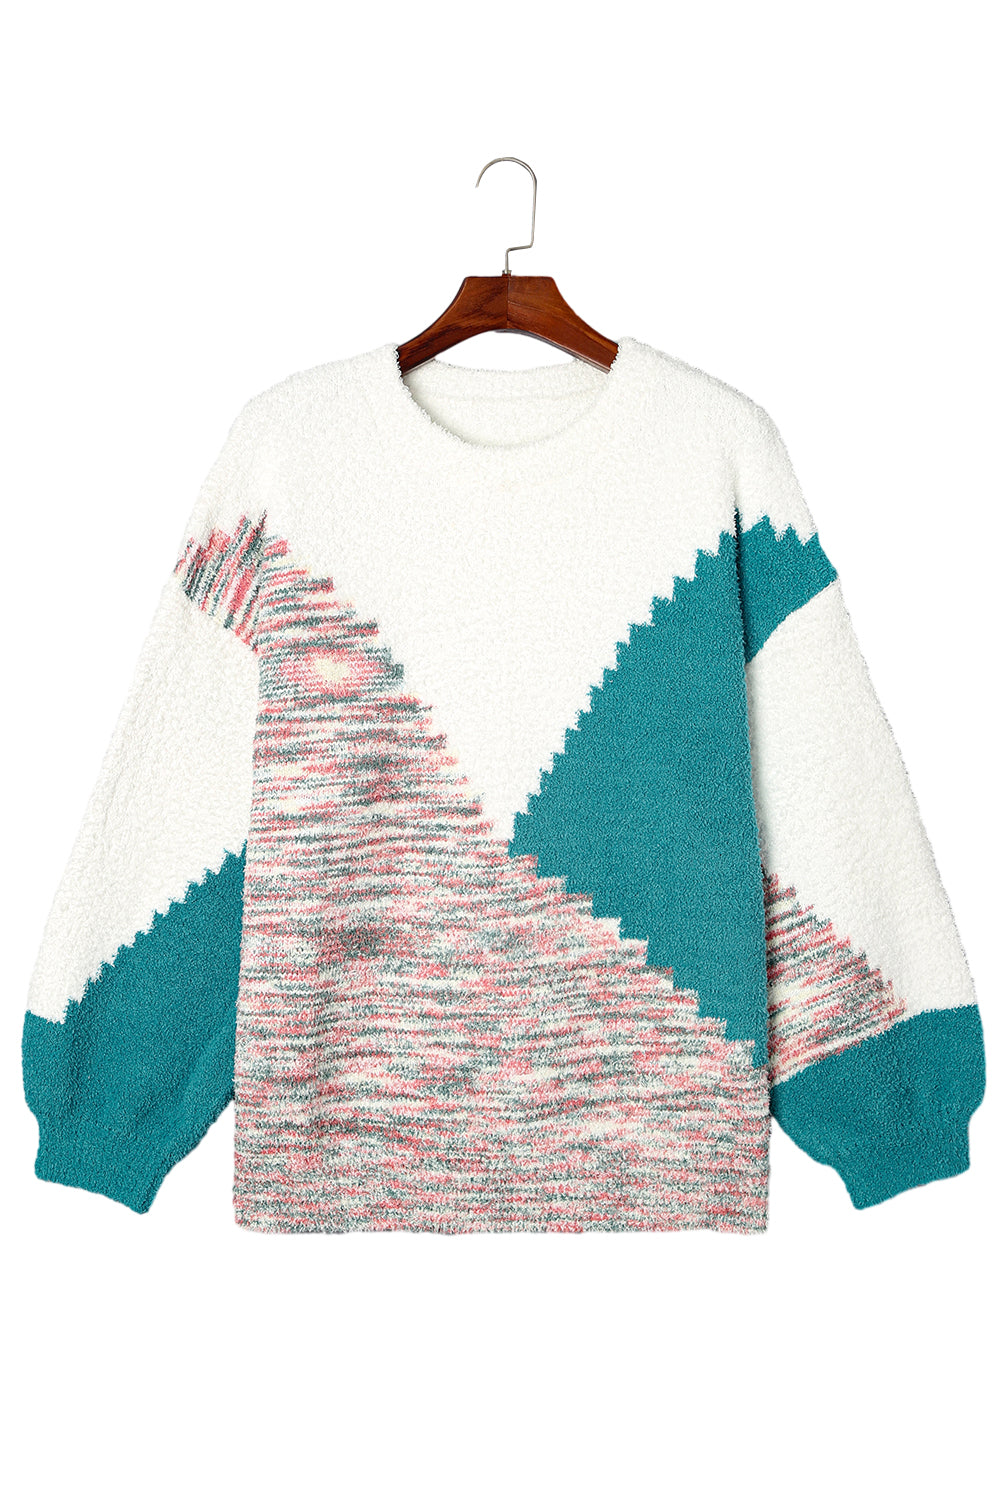 Večbarvni nazobčani barvni pulover velike velikosti